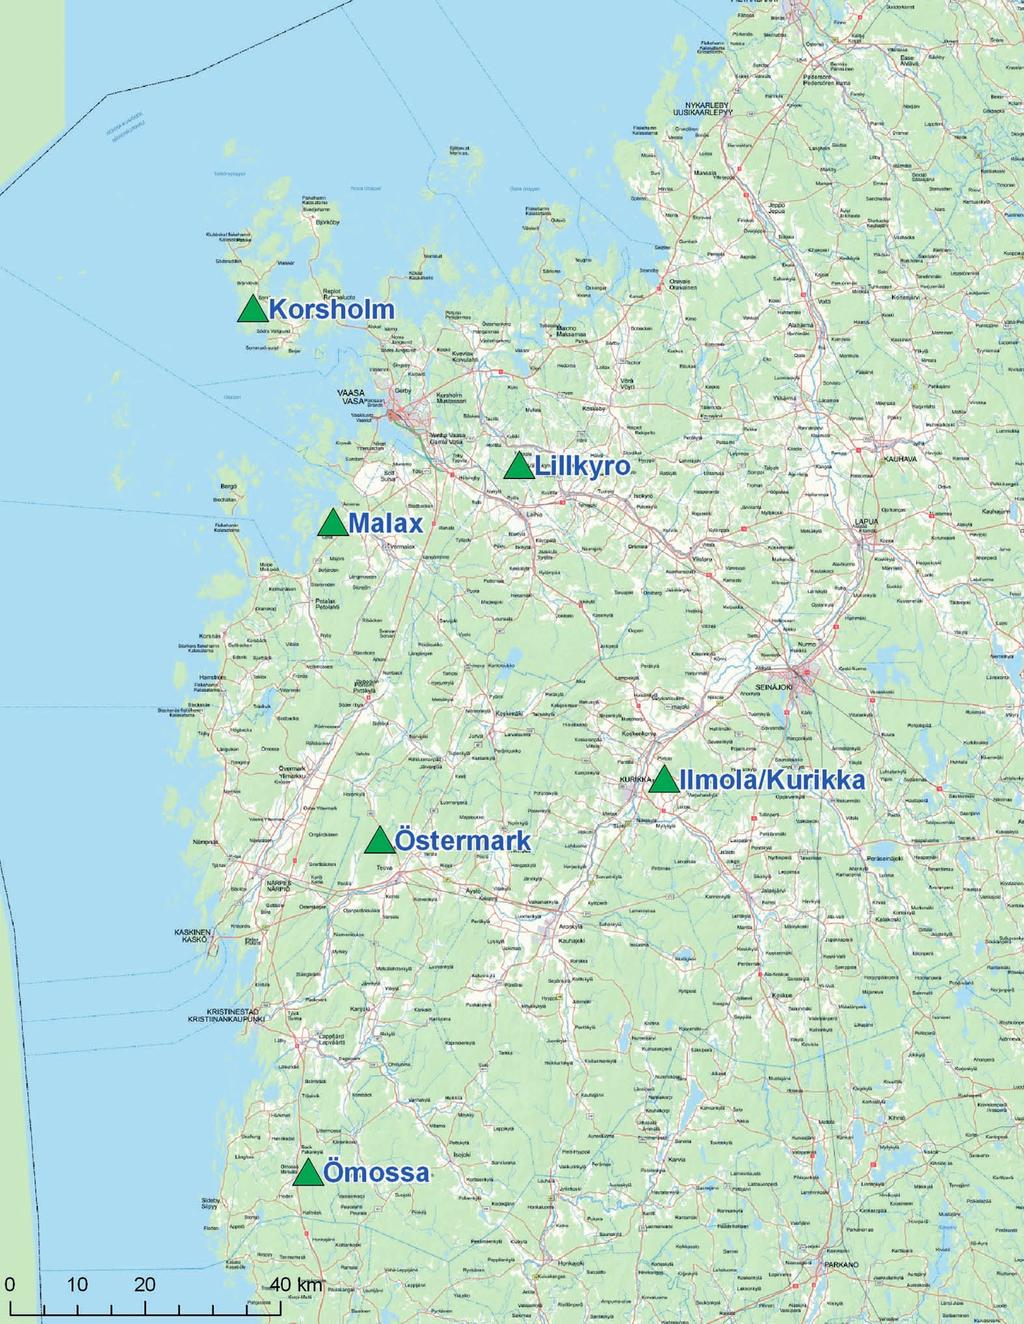 Figur 3-2. Områden där EPV Tuulivoima Oy utreder möjligheterna att bygga vindkraft i Österbotten.